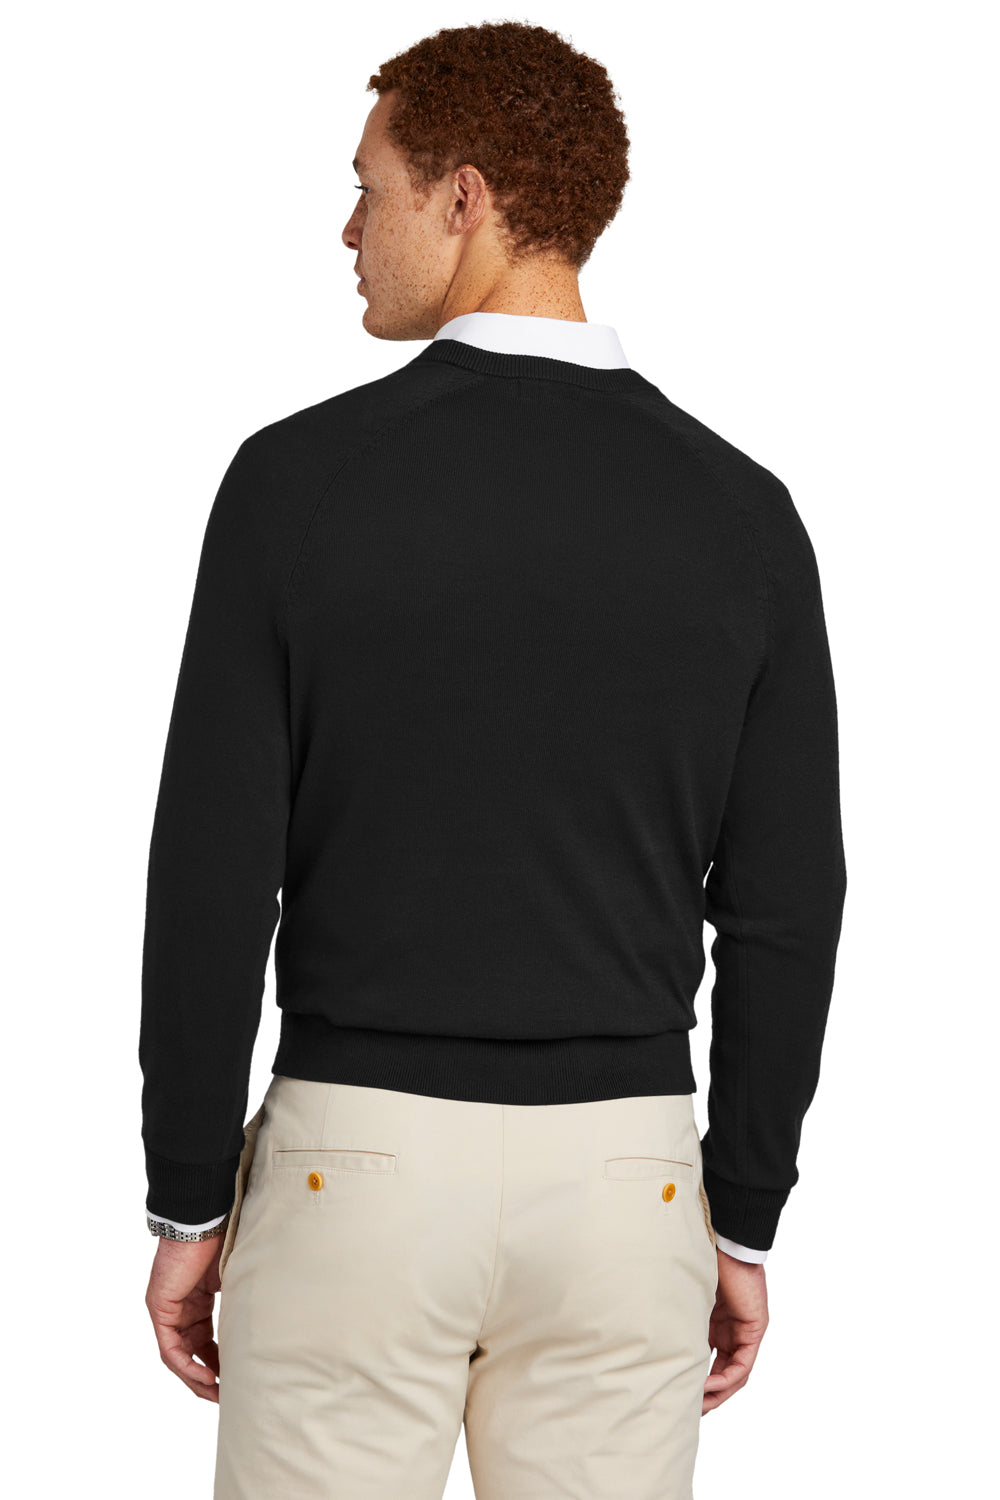 Brooks Brothers Mens Long Sleeve V-Neck Sweater Deep Black Model Back